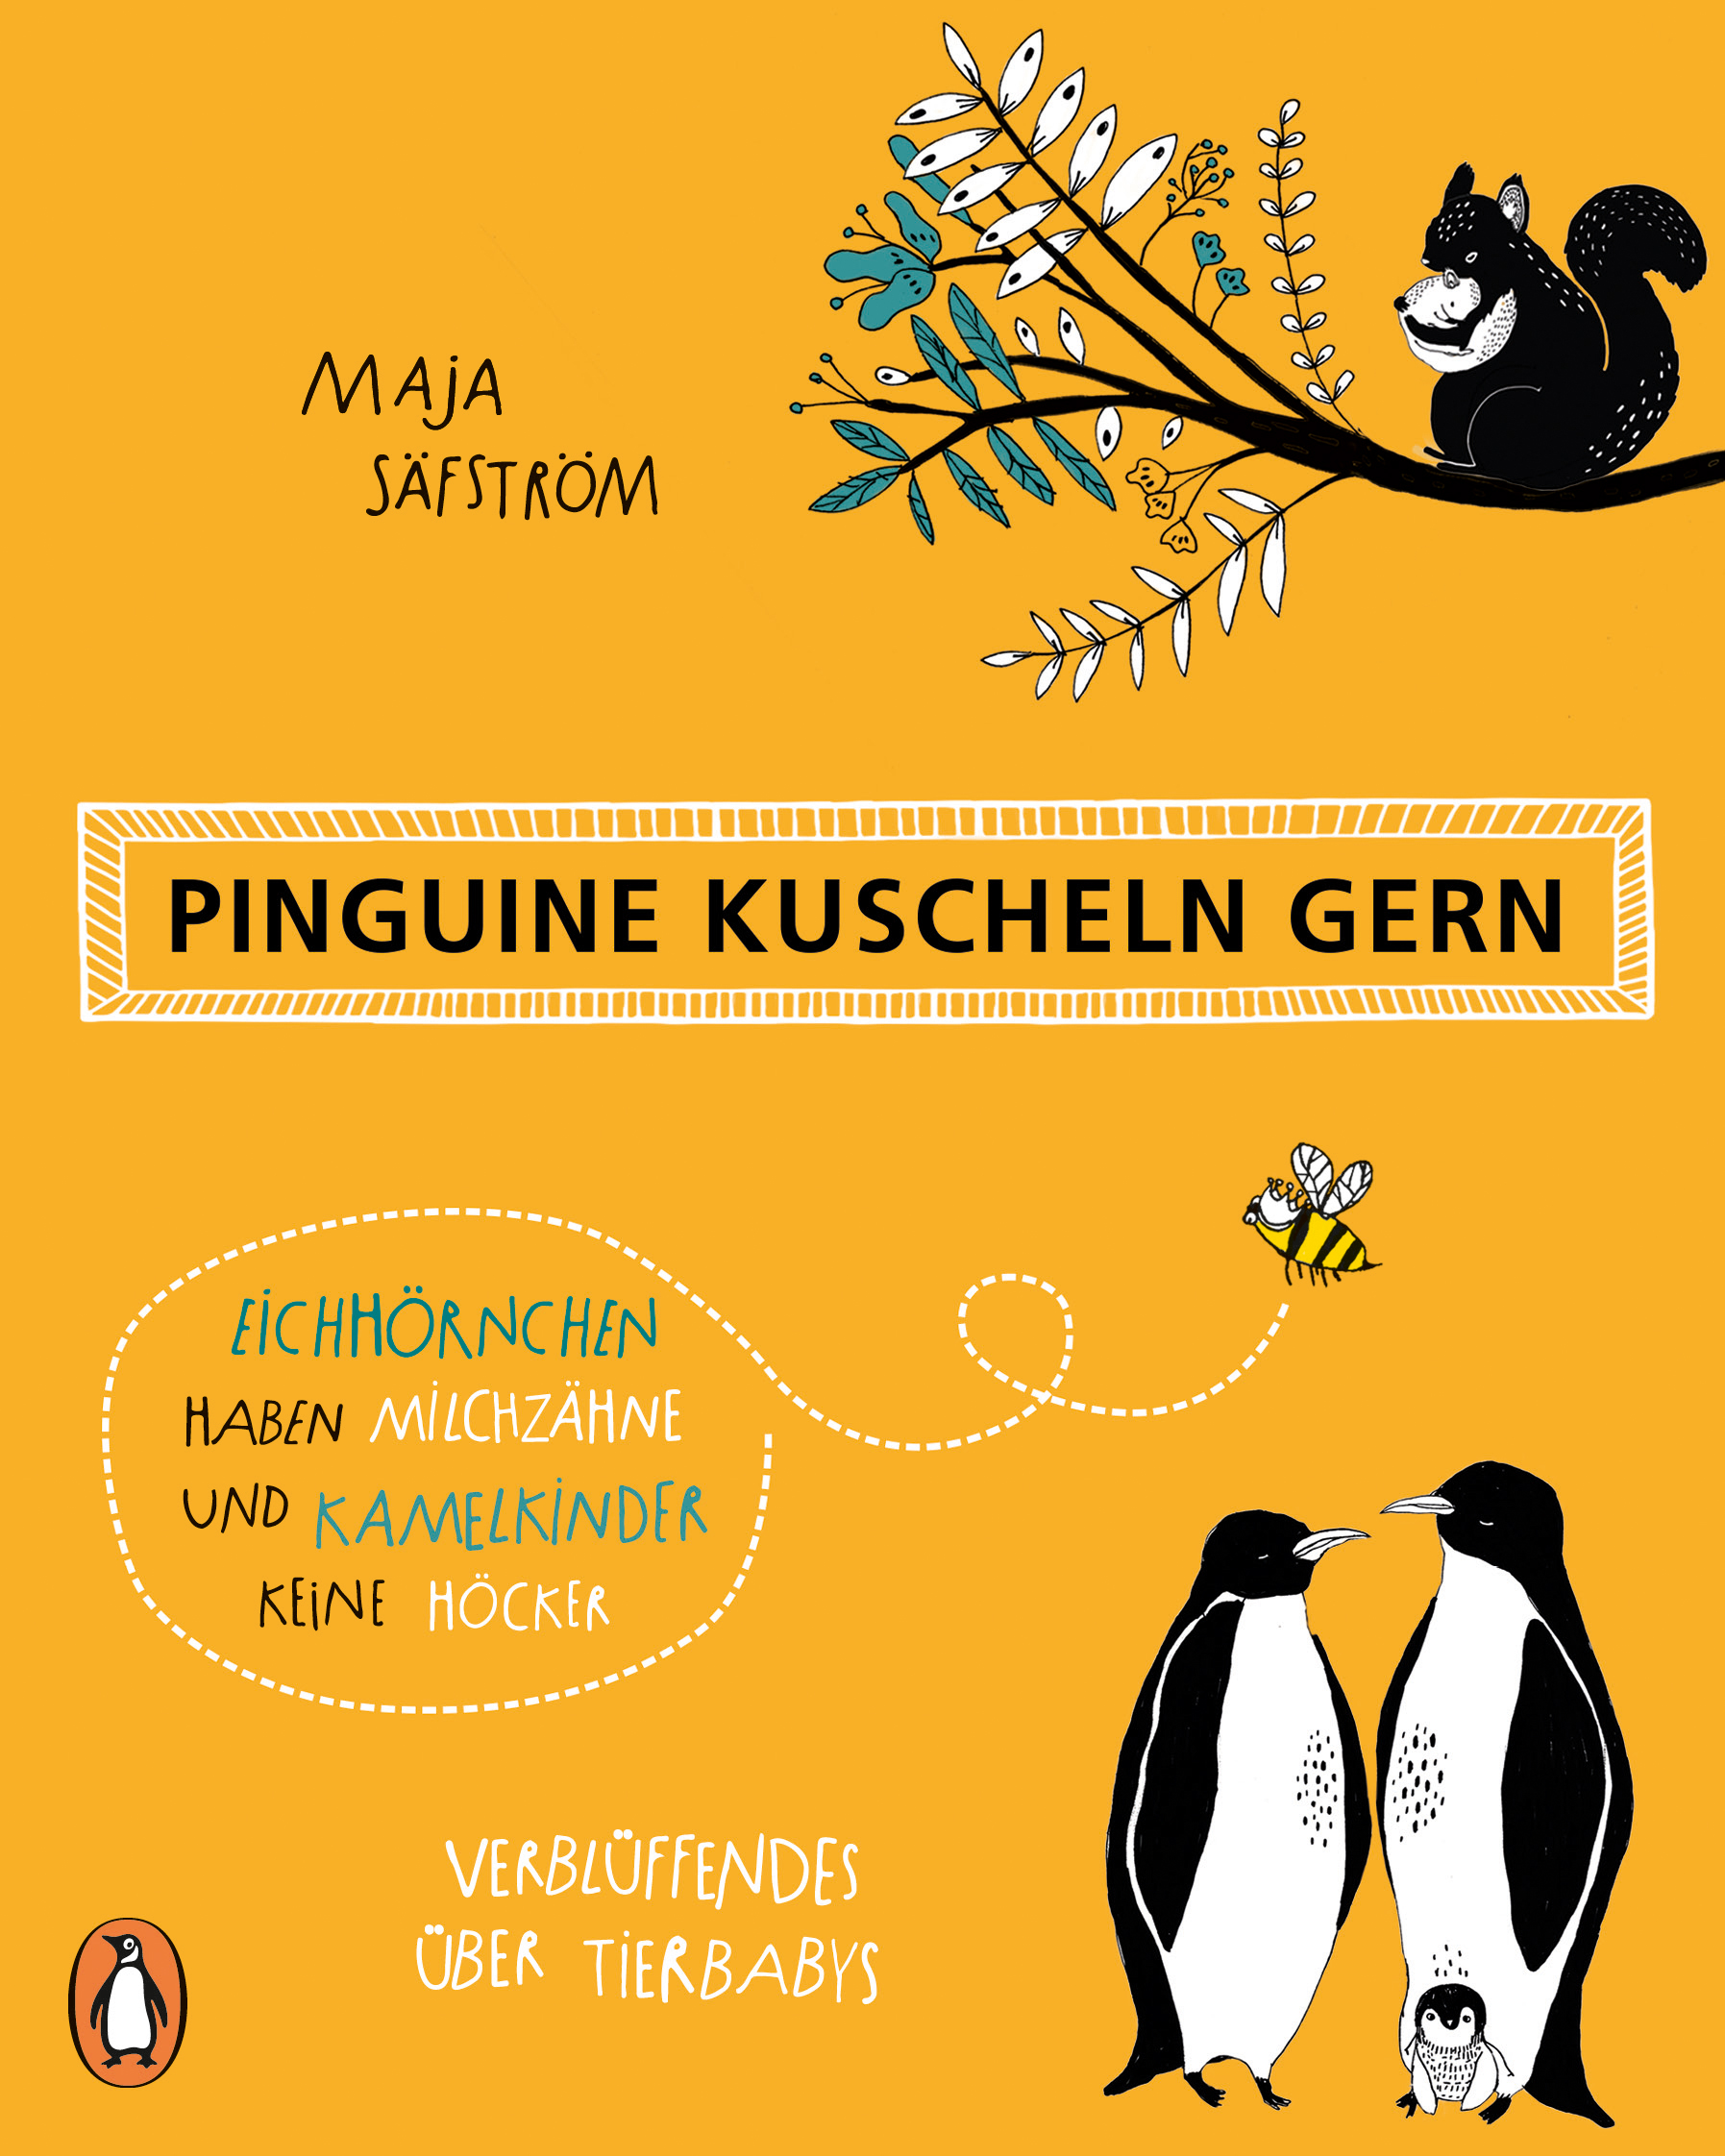 Pinguine kuscheln gern (Cover)